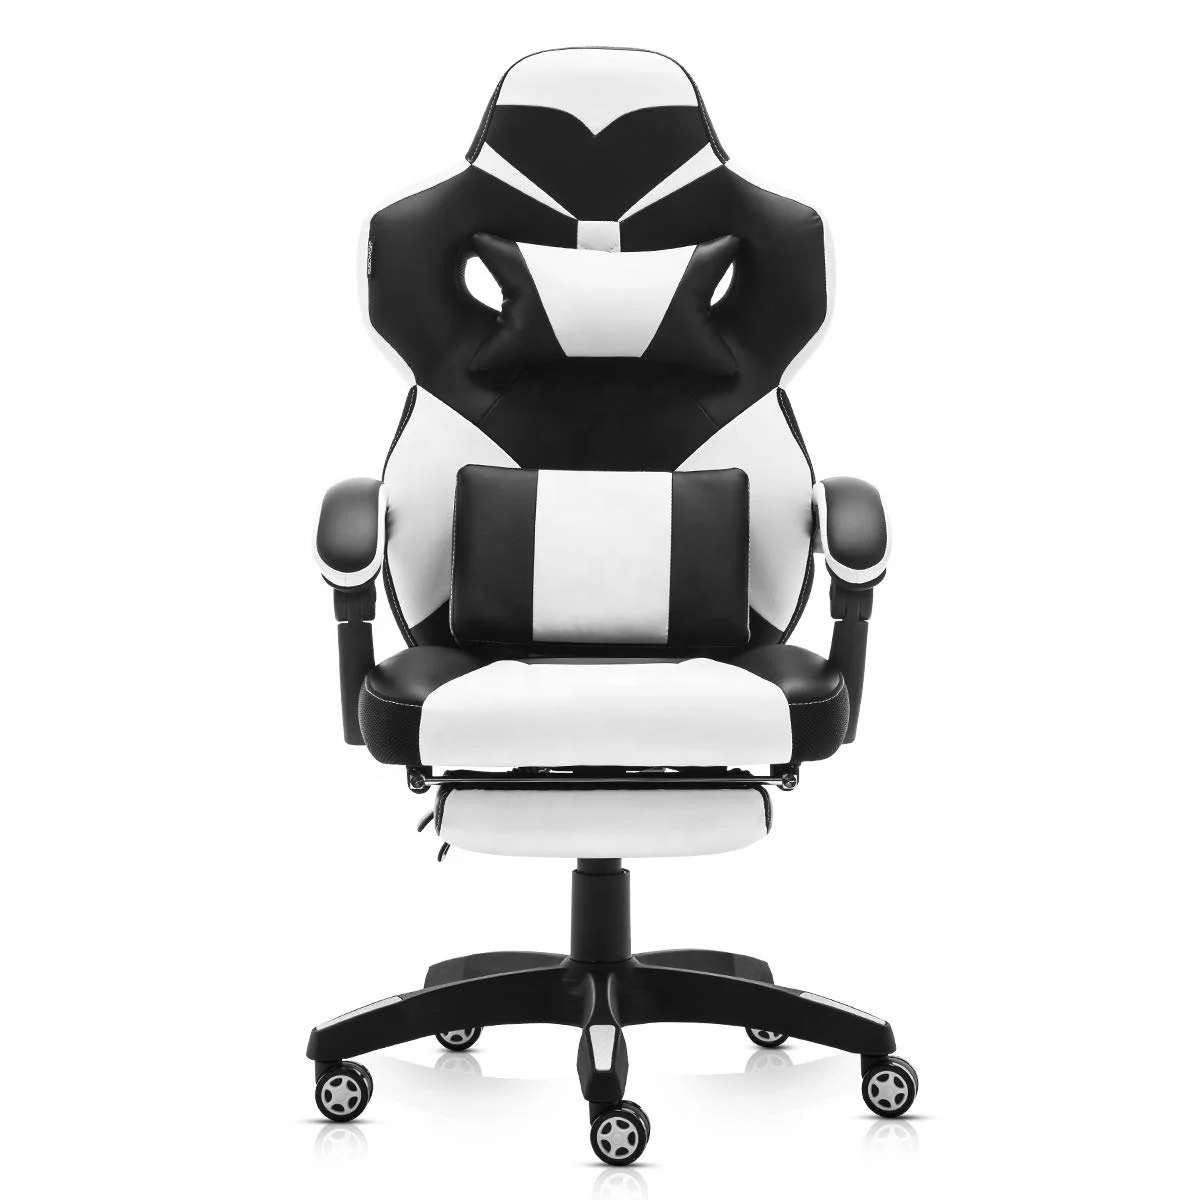  Популярный эргономичный поворотный компьютерный офисный игровой стул SOHO гоночный стиль из искусственной